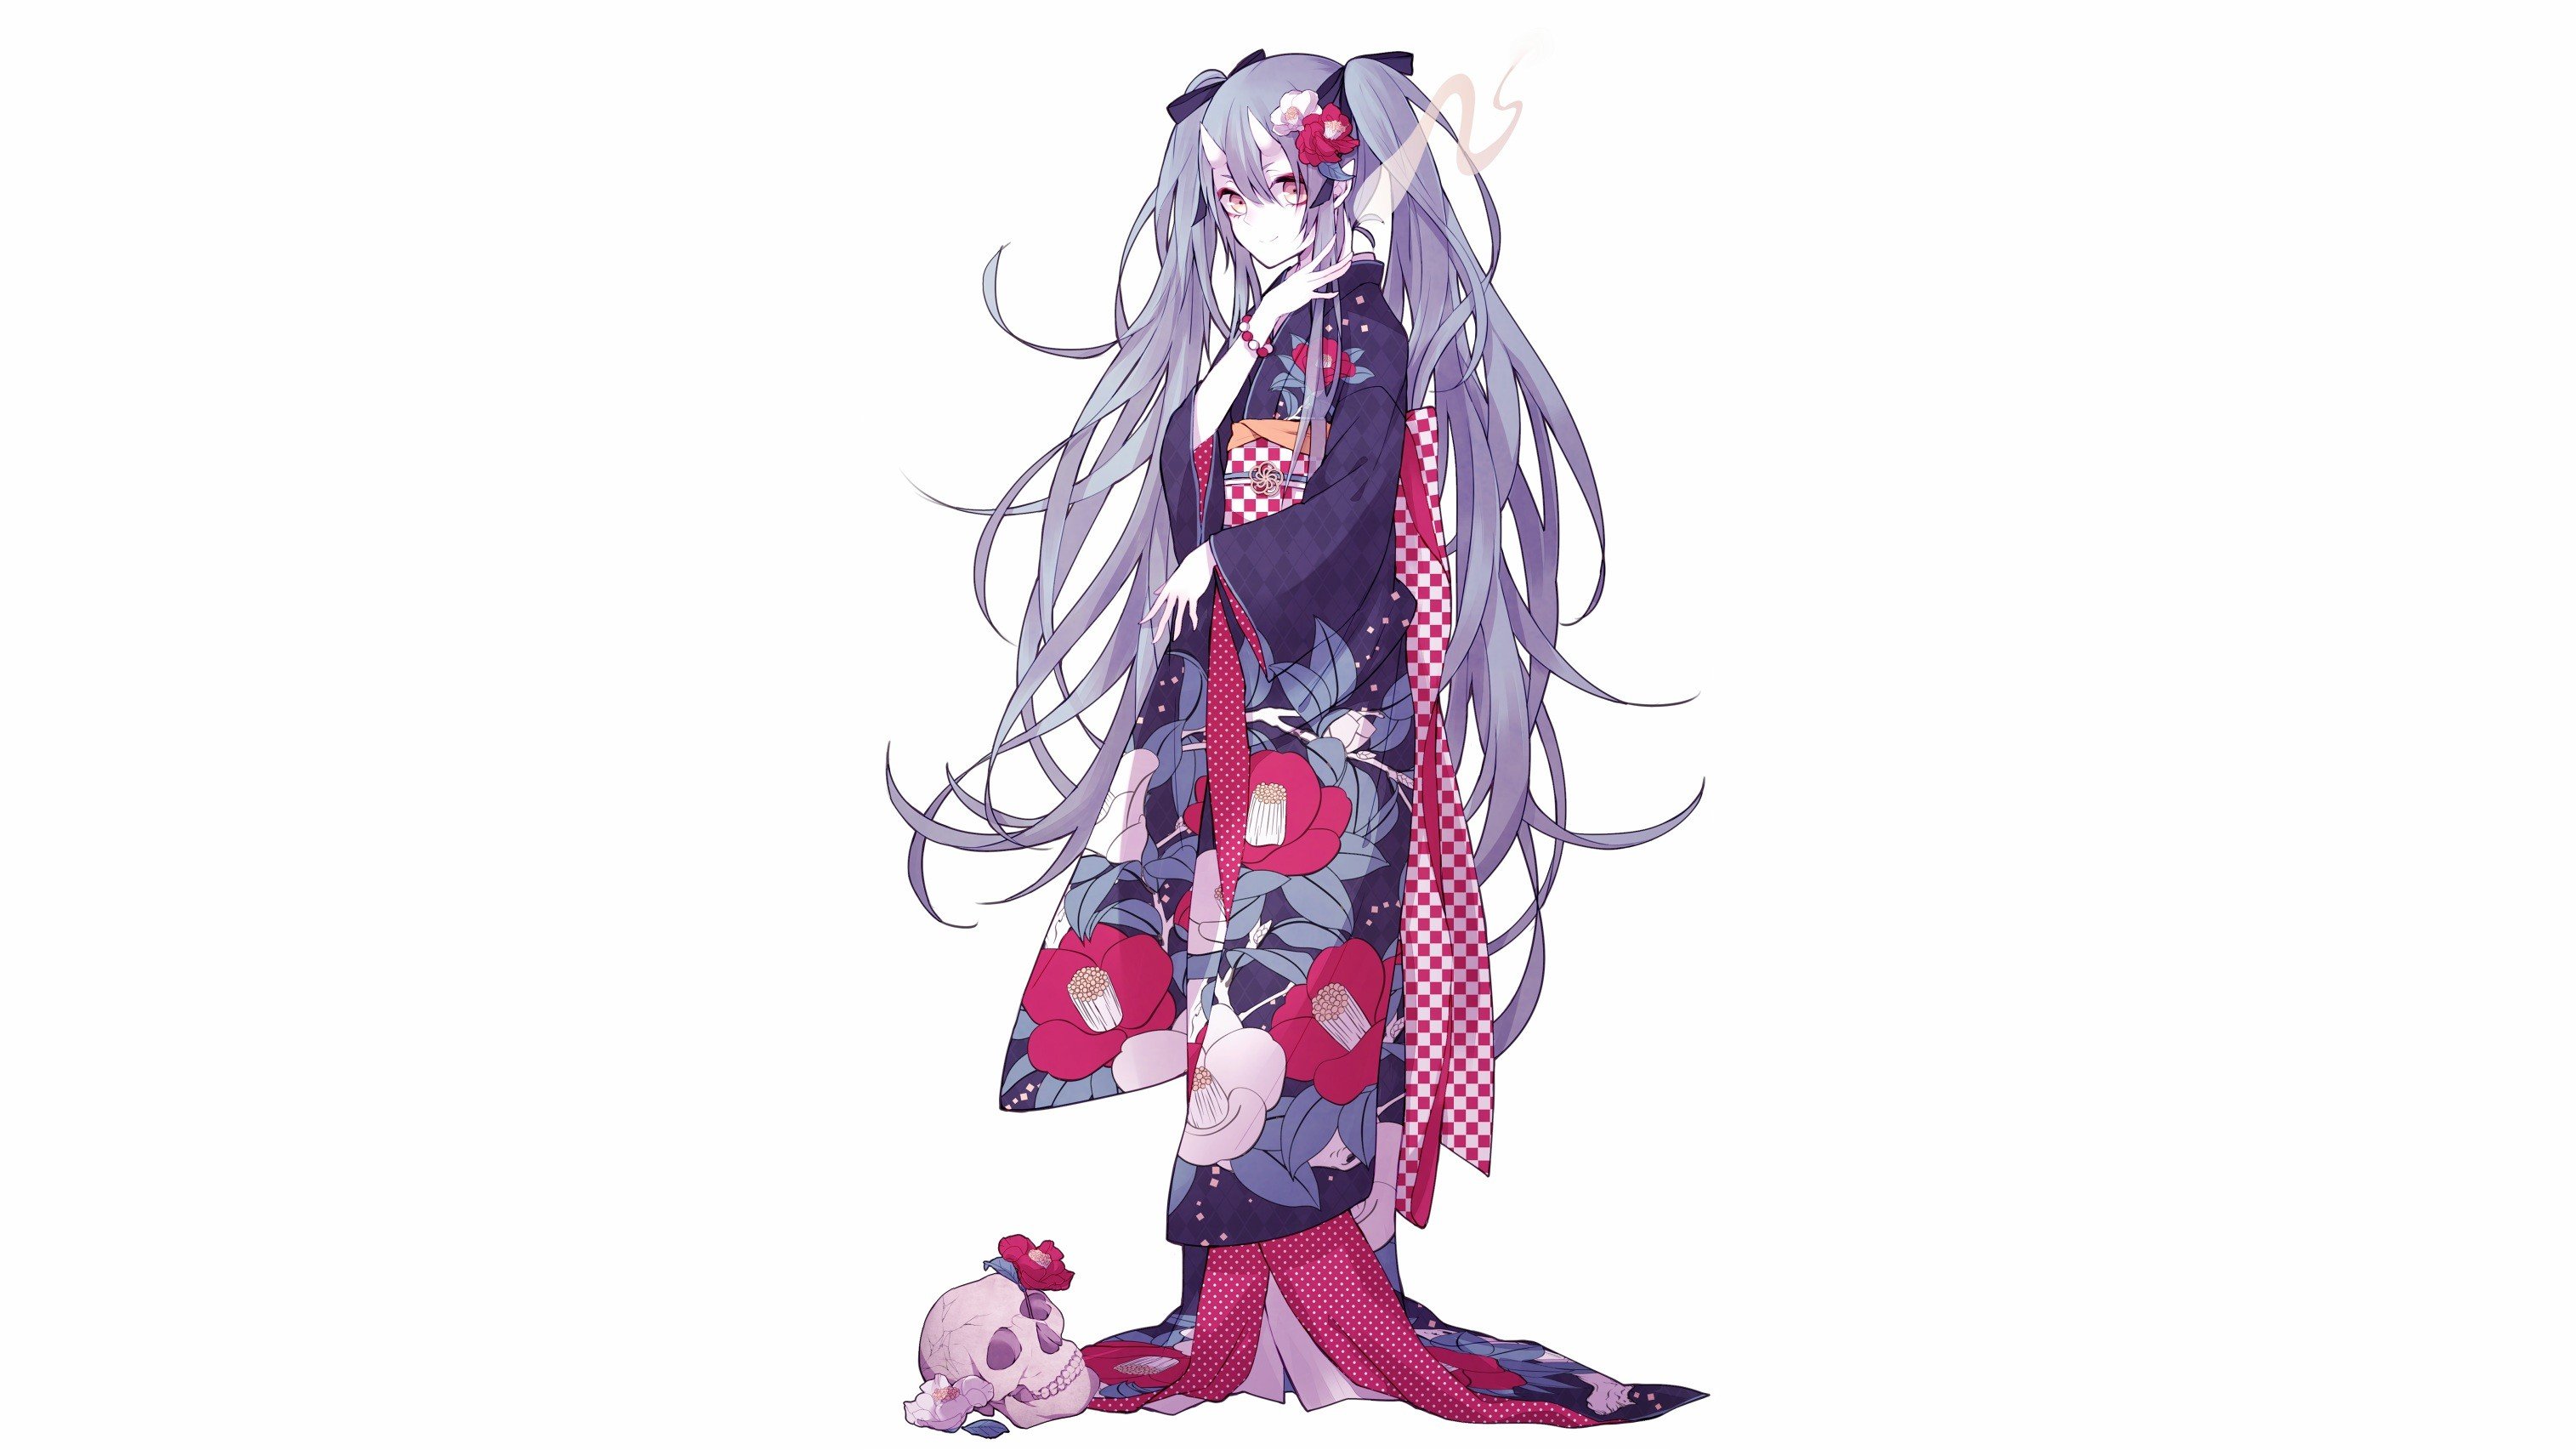 kimono, Anime girls, Vocaloid, White background, Hatsune Miku Wallpaper